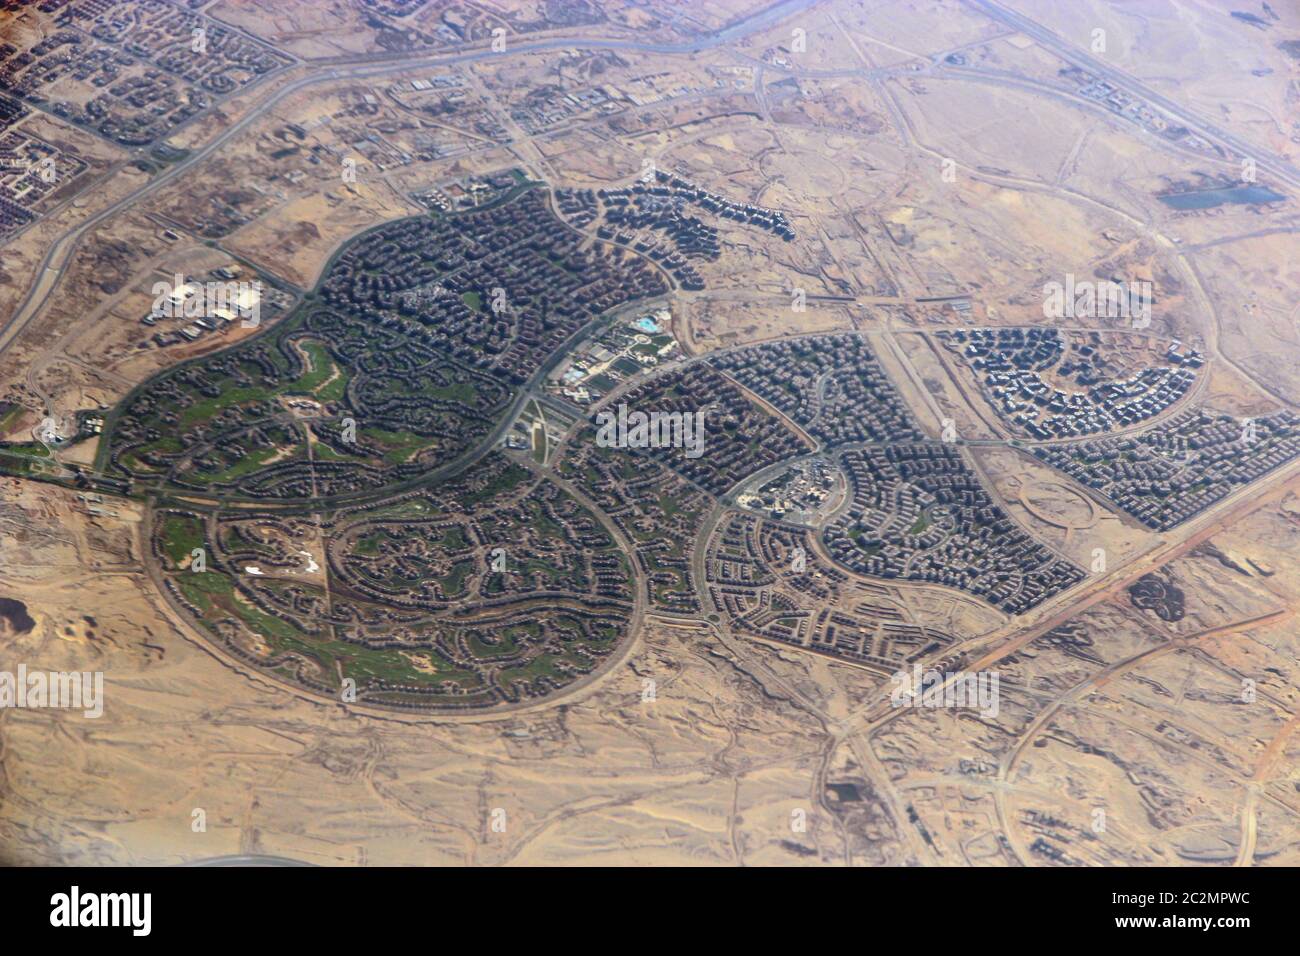 Vista aerea della città con strade, case, edifici, in Egitto. Immagine panoramica. Vista del villaggio dall'aria. Foto Stock